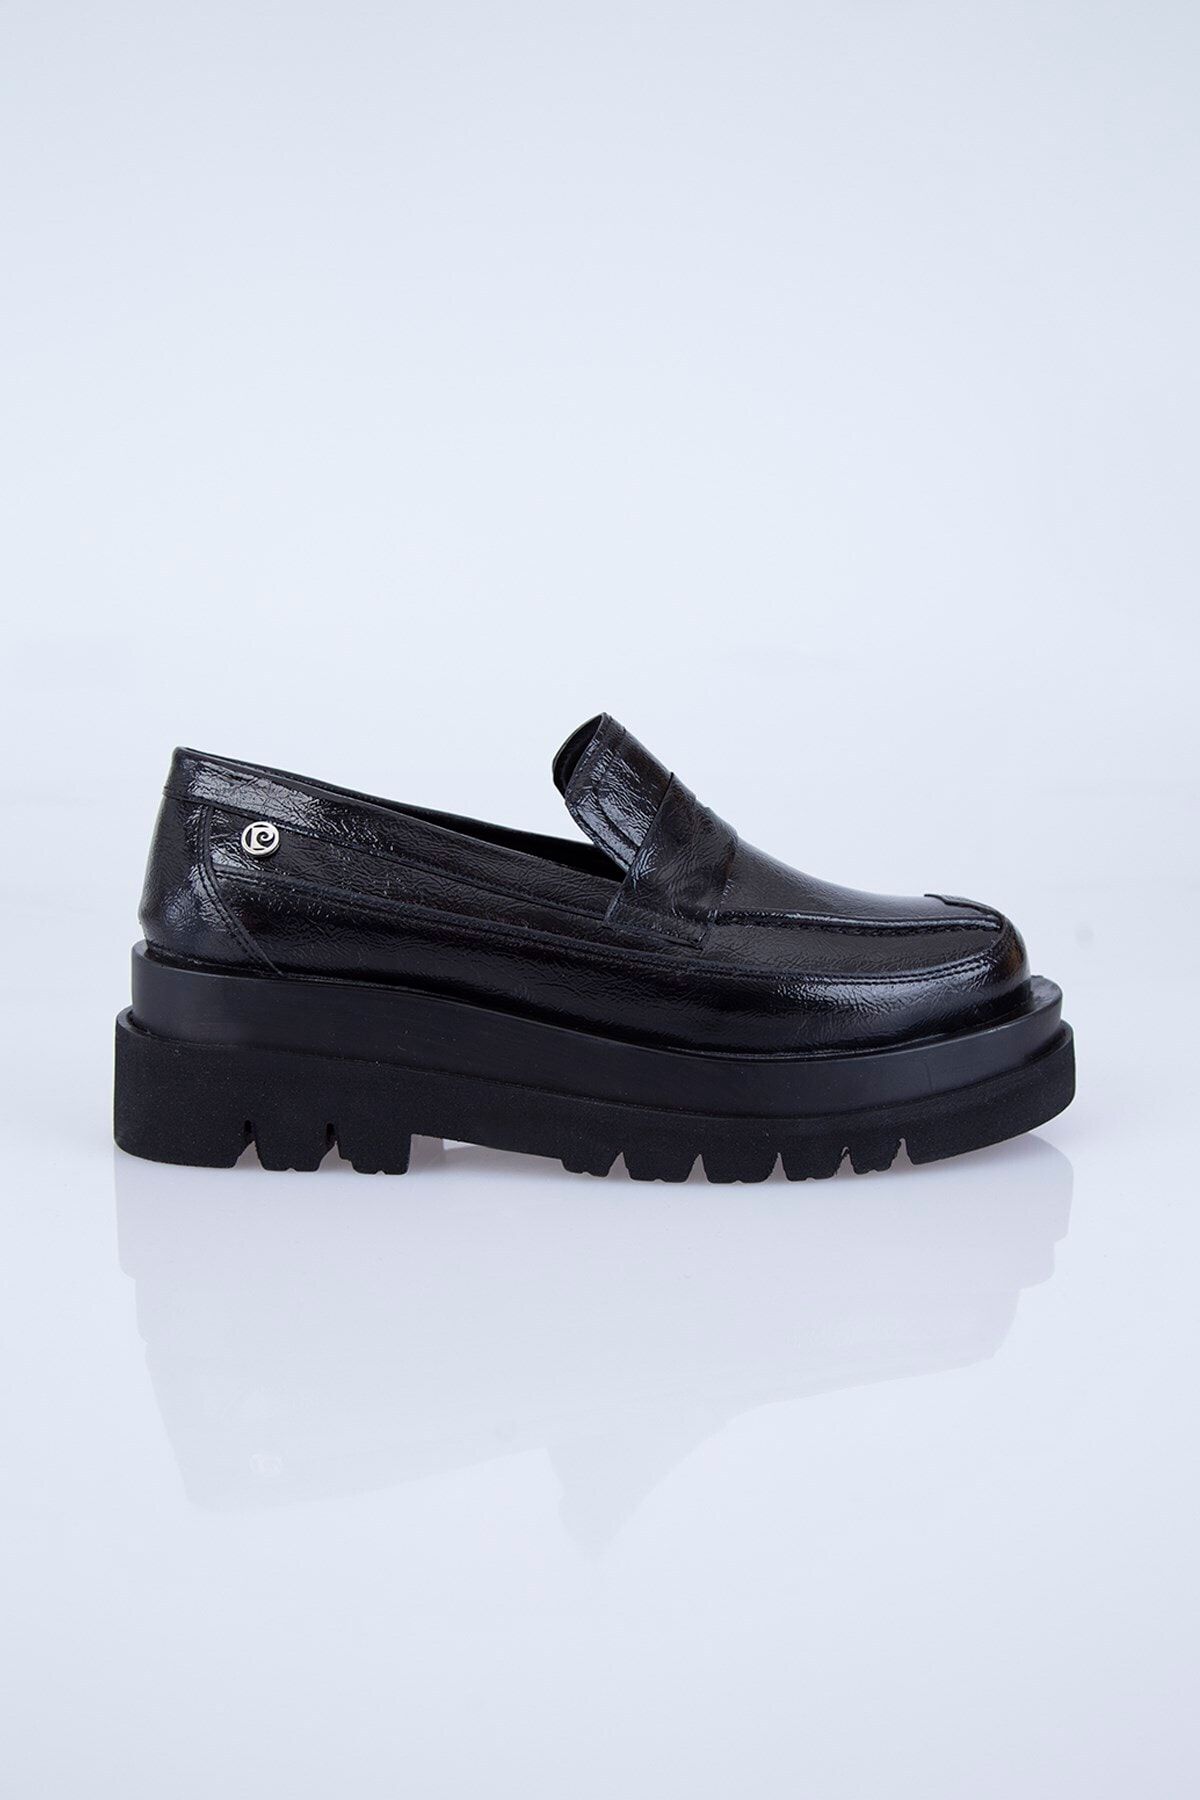 Pierre Cardin Pc-50830 Siyah Kadın Ayakkabı